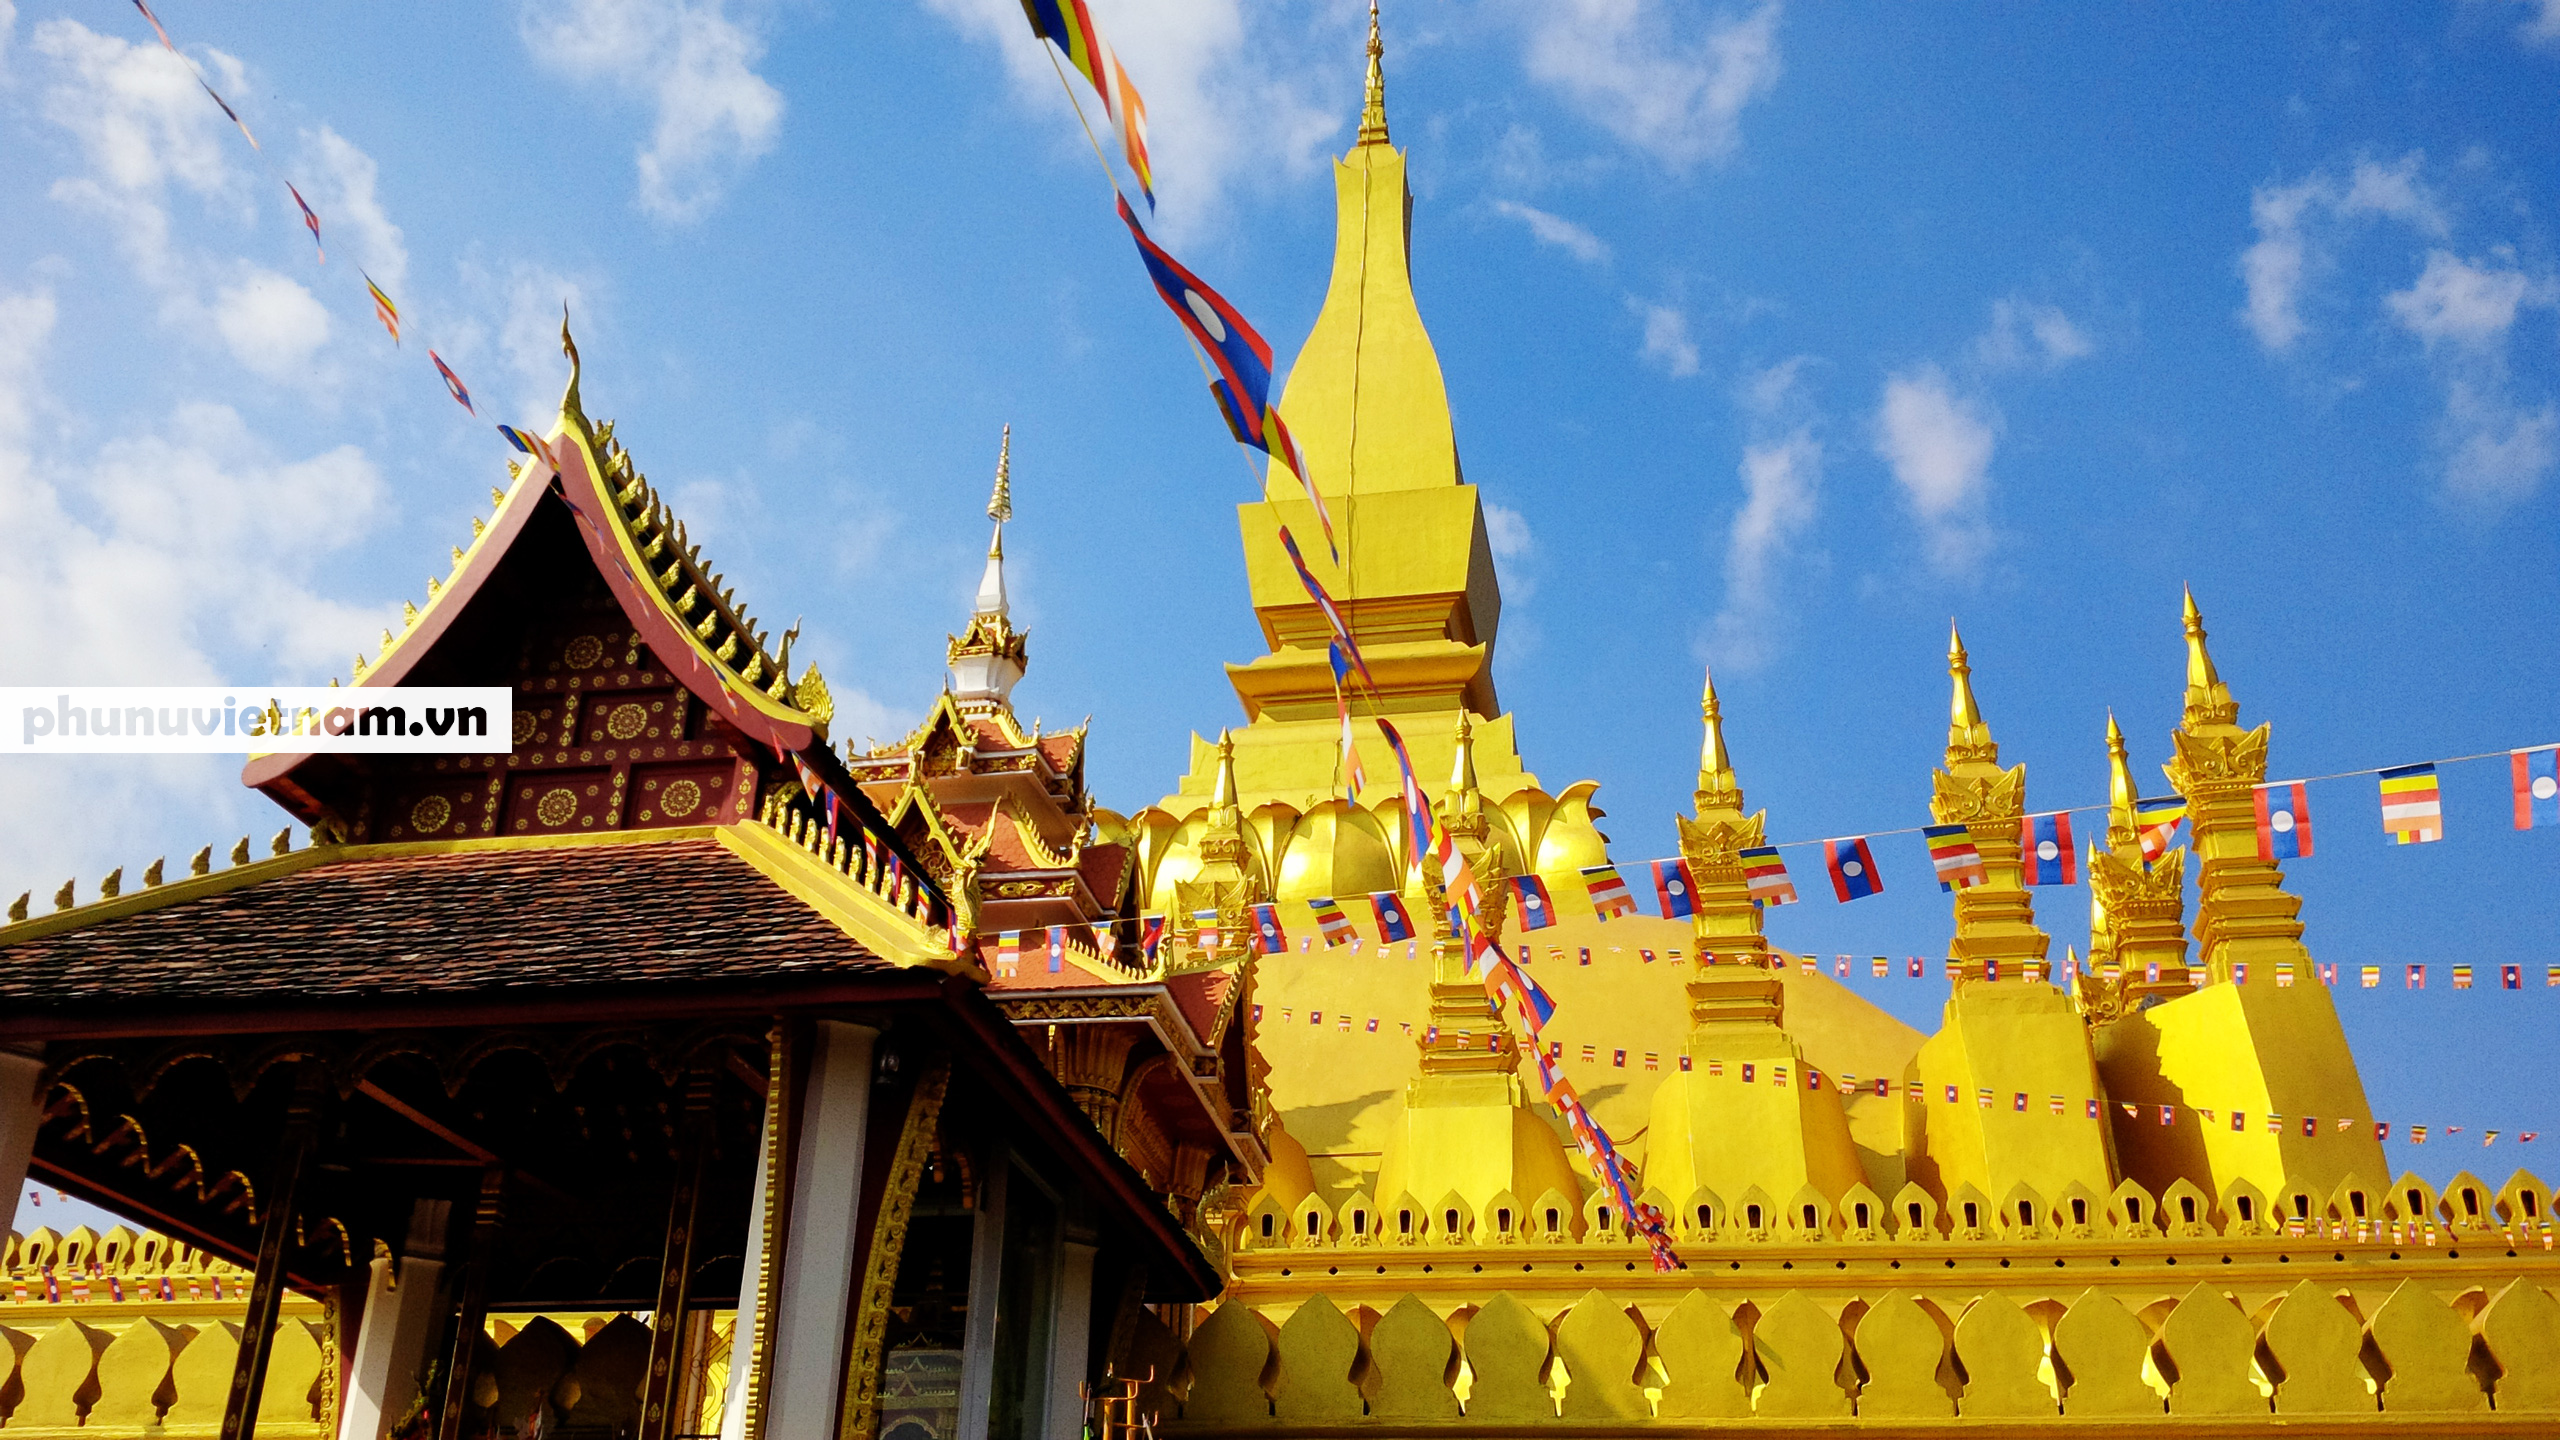 Chiêm ngưỡng ngôi tháp vàng lớn nhất của Lào, gần 500 tuổi tráng lệ giữa đất trời - Ảnh 7.